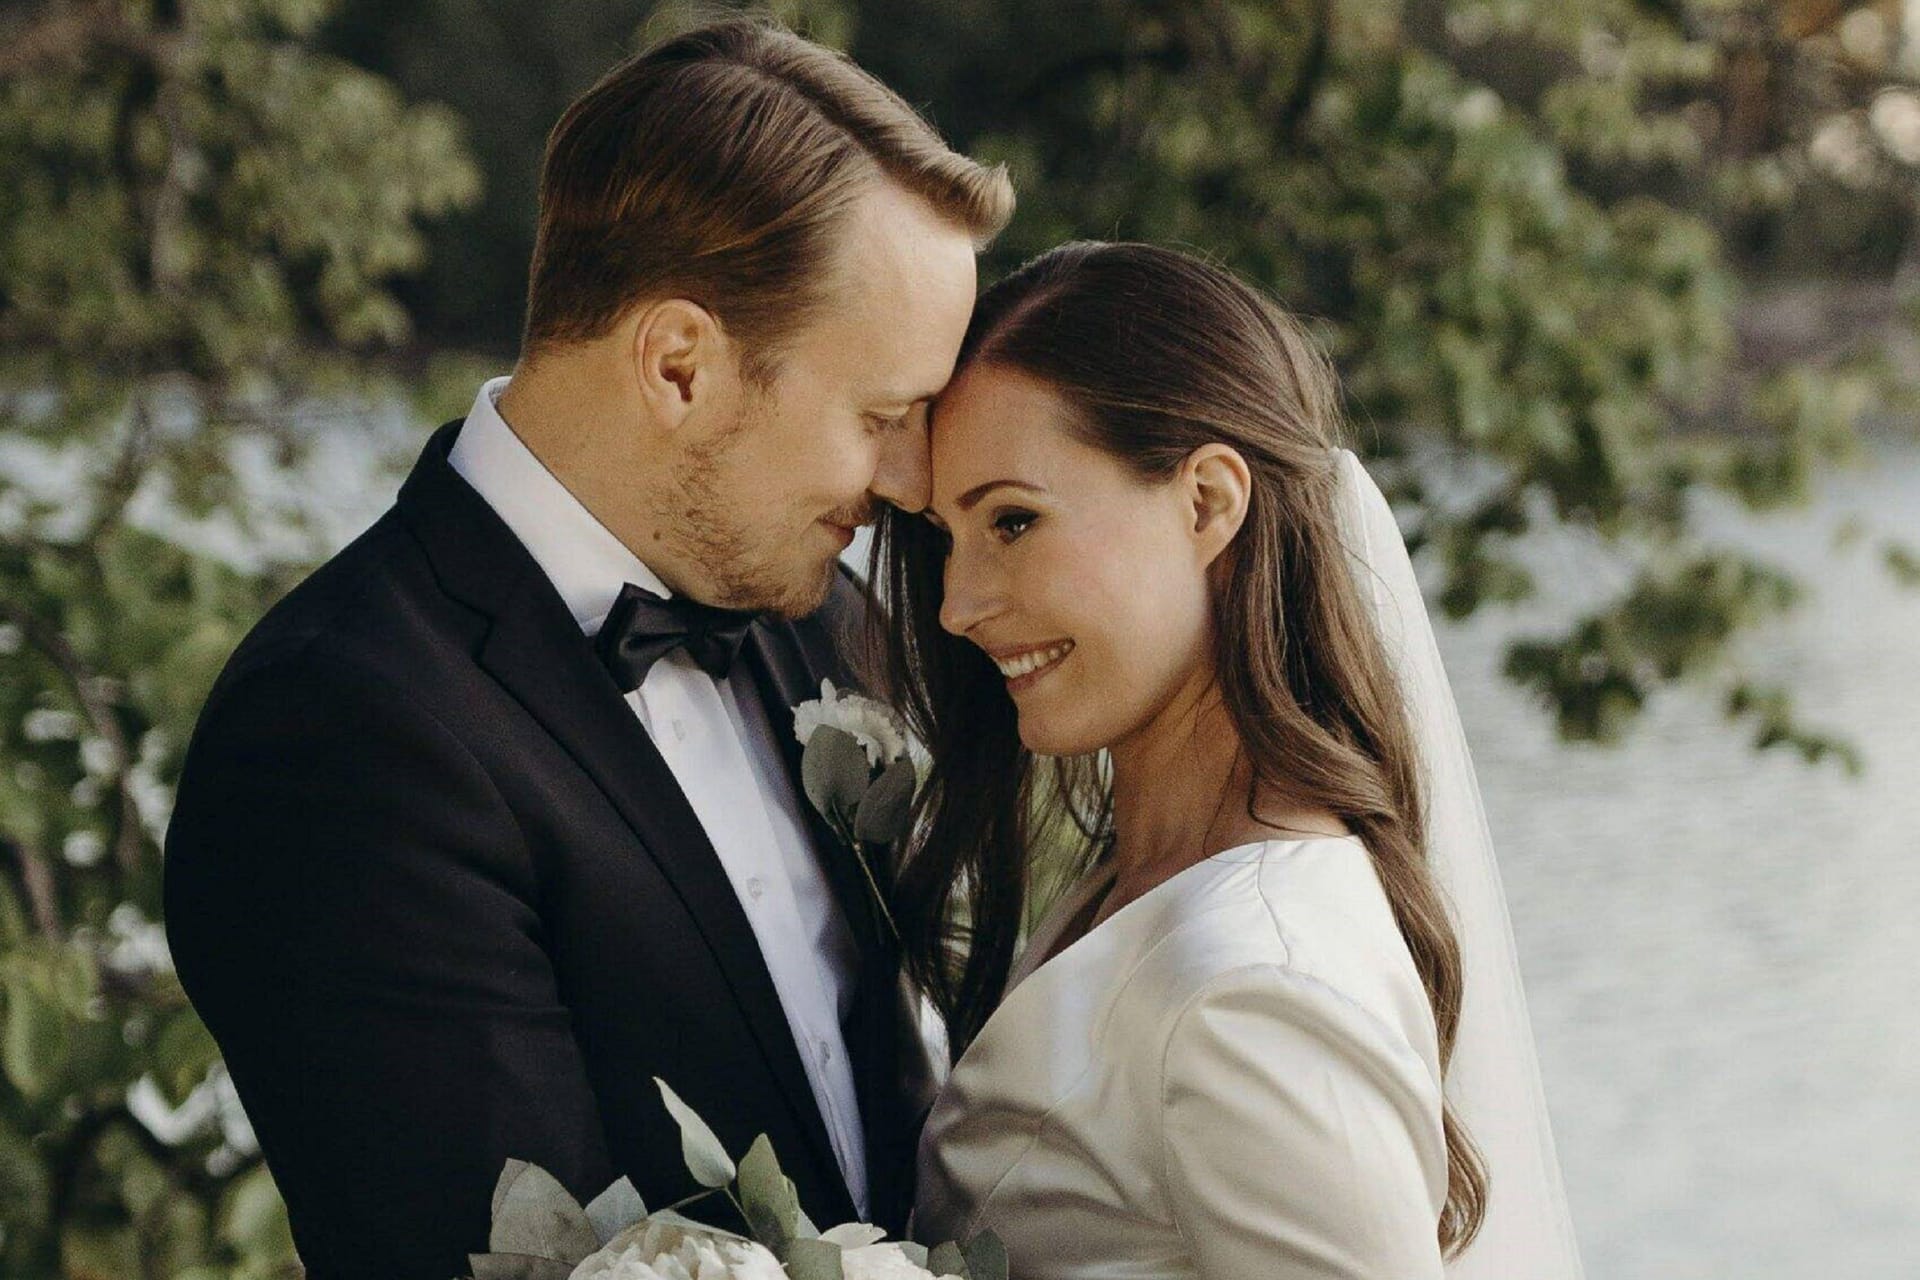 Am 1. August 2020 heiratete sie ihren langjährigen Freund Markus Räikkönen.